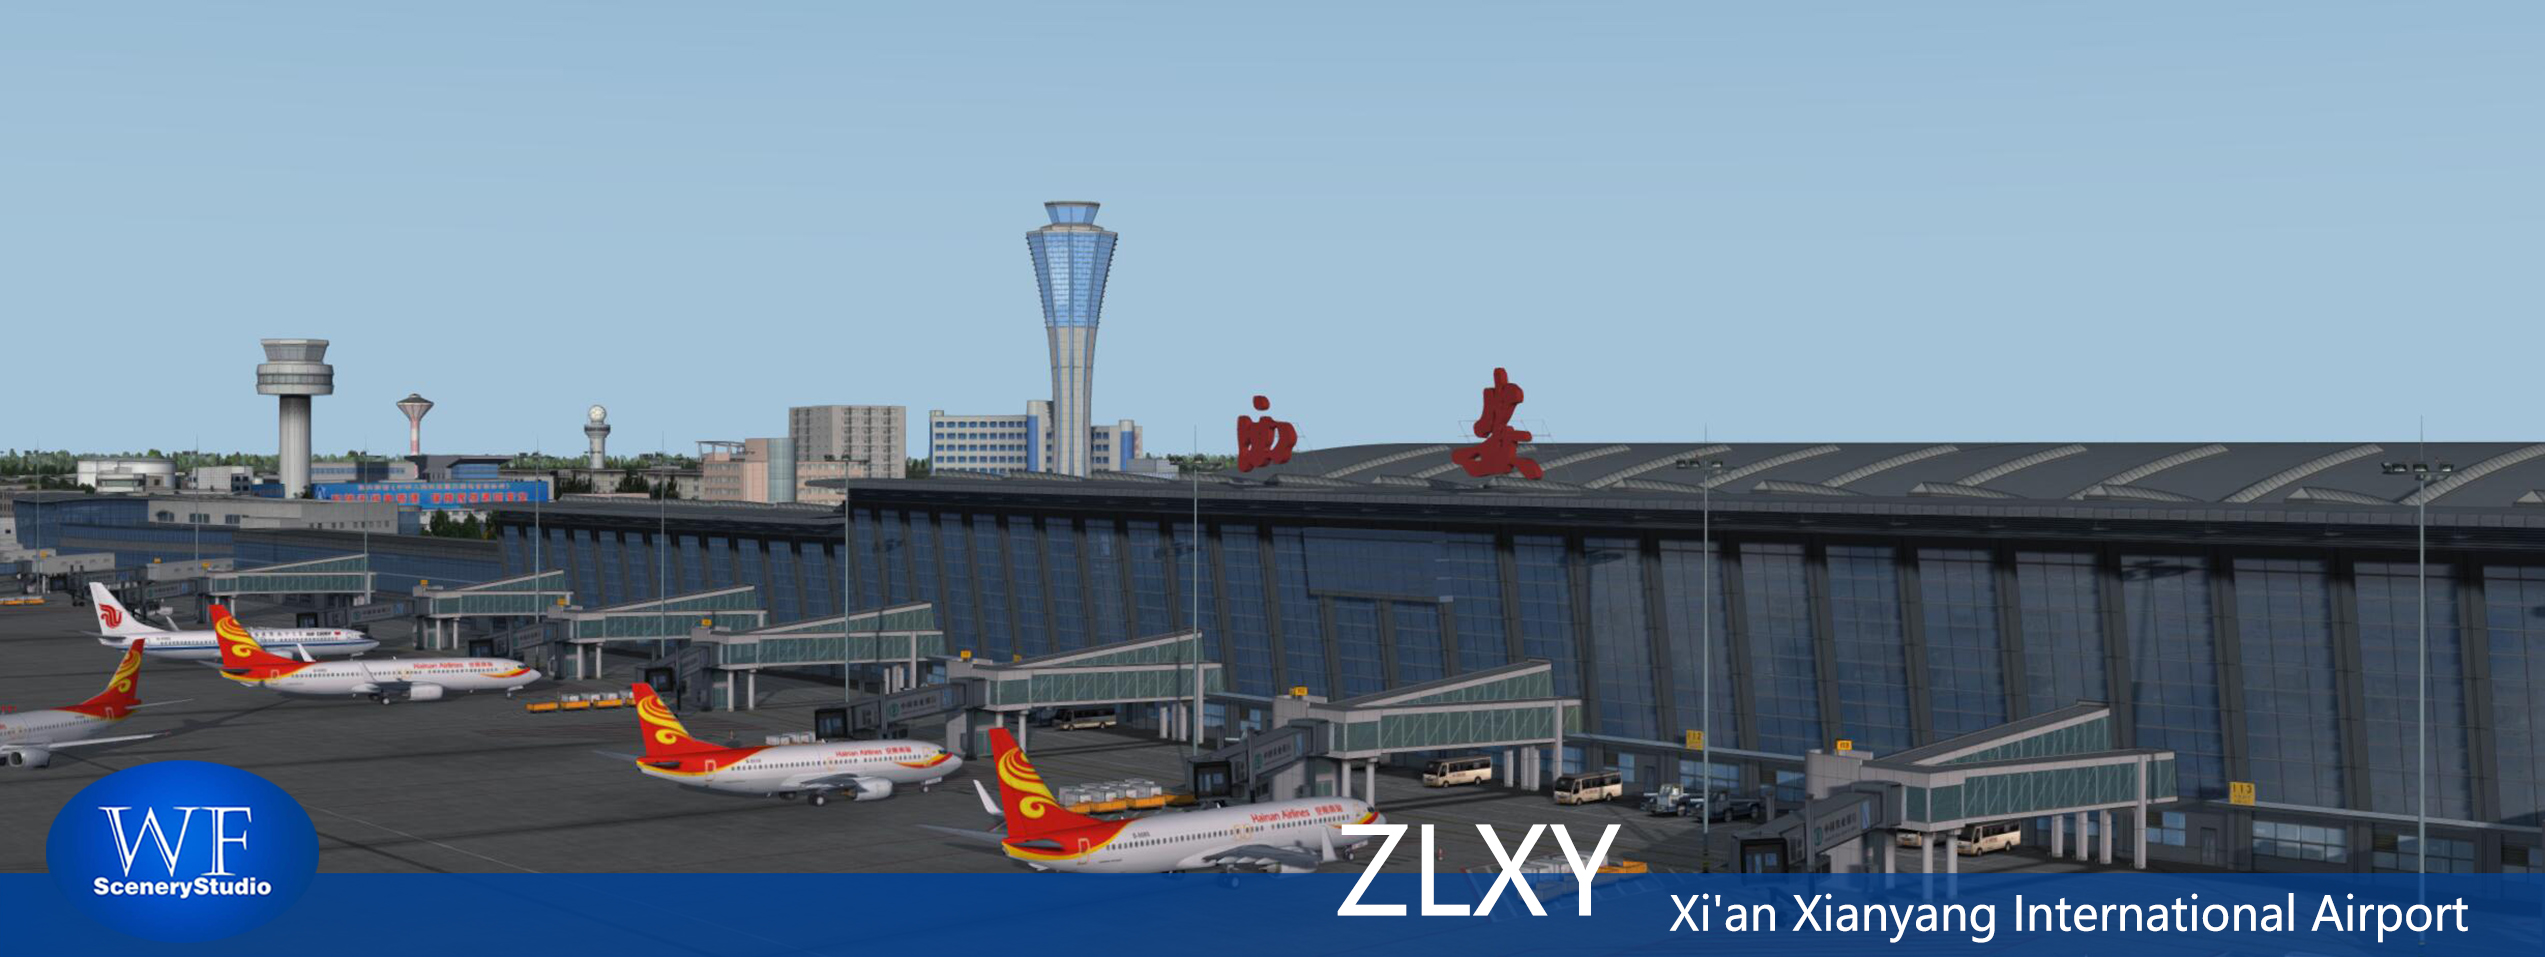 西安咸阳国际机场发布-8683 